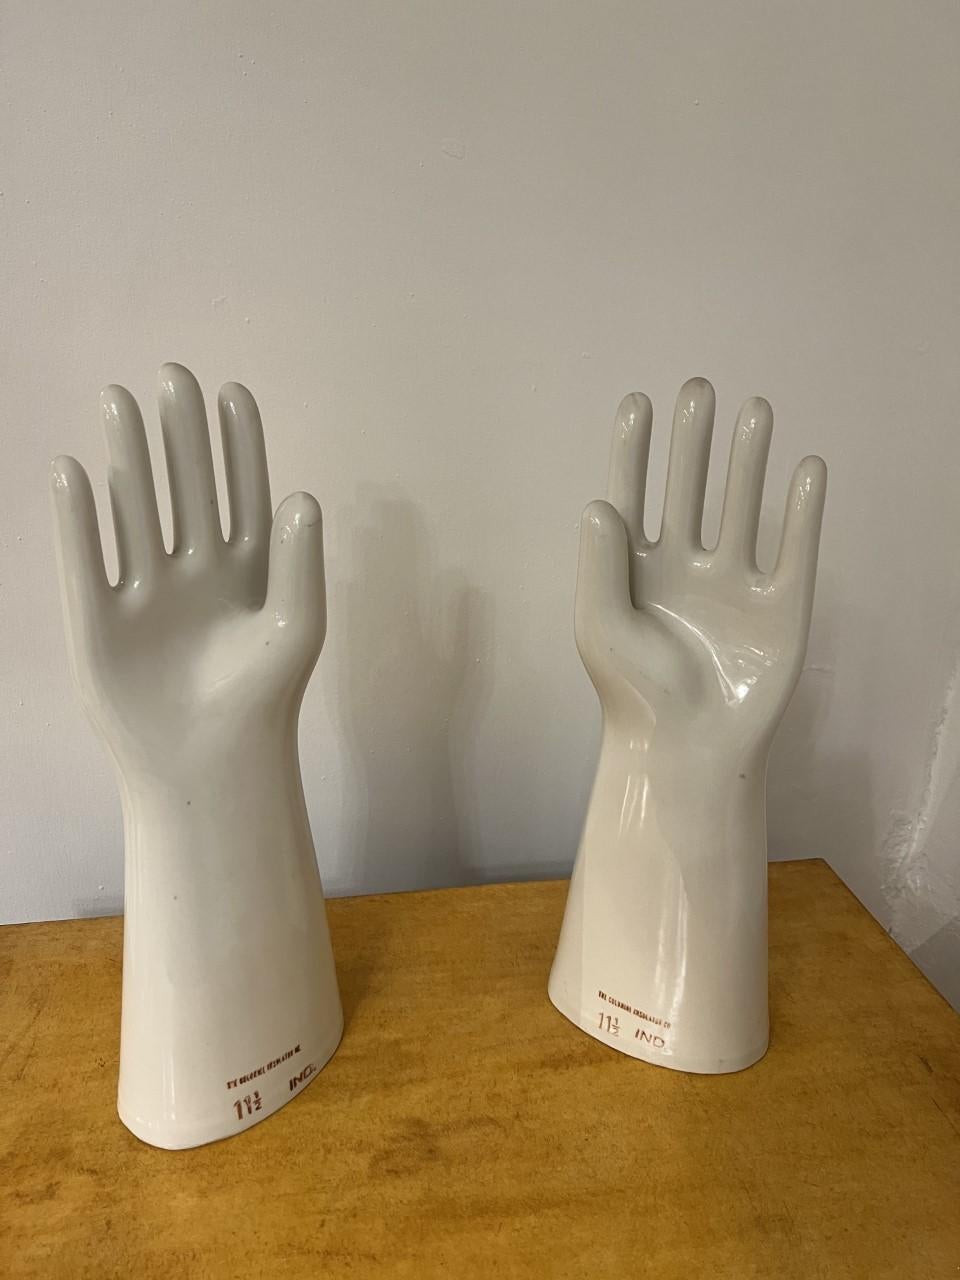 Américain Paire de mains sur céramique « the Colonial Insulator Co » 11/1/2 Ind, Patent 22615 en vente